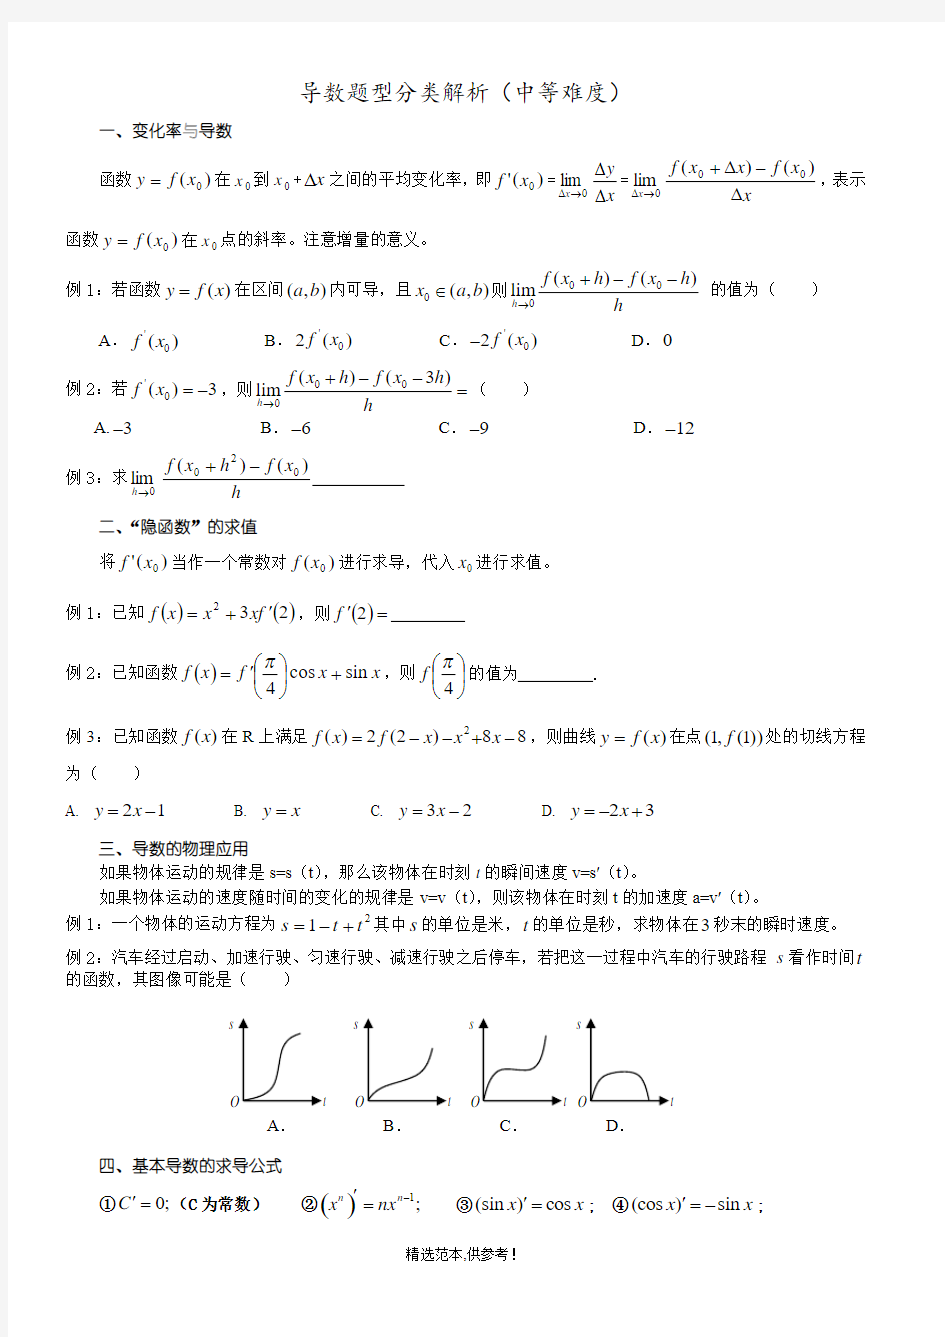 高二数学选修-2导数2种题型归纳(中等难度)